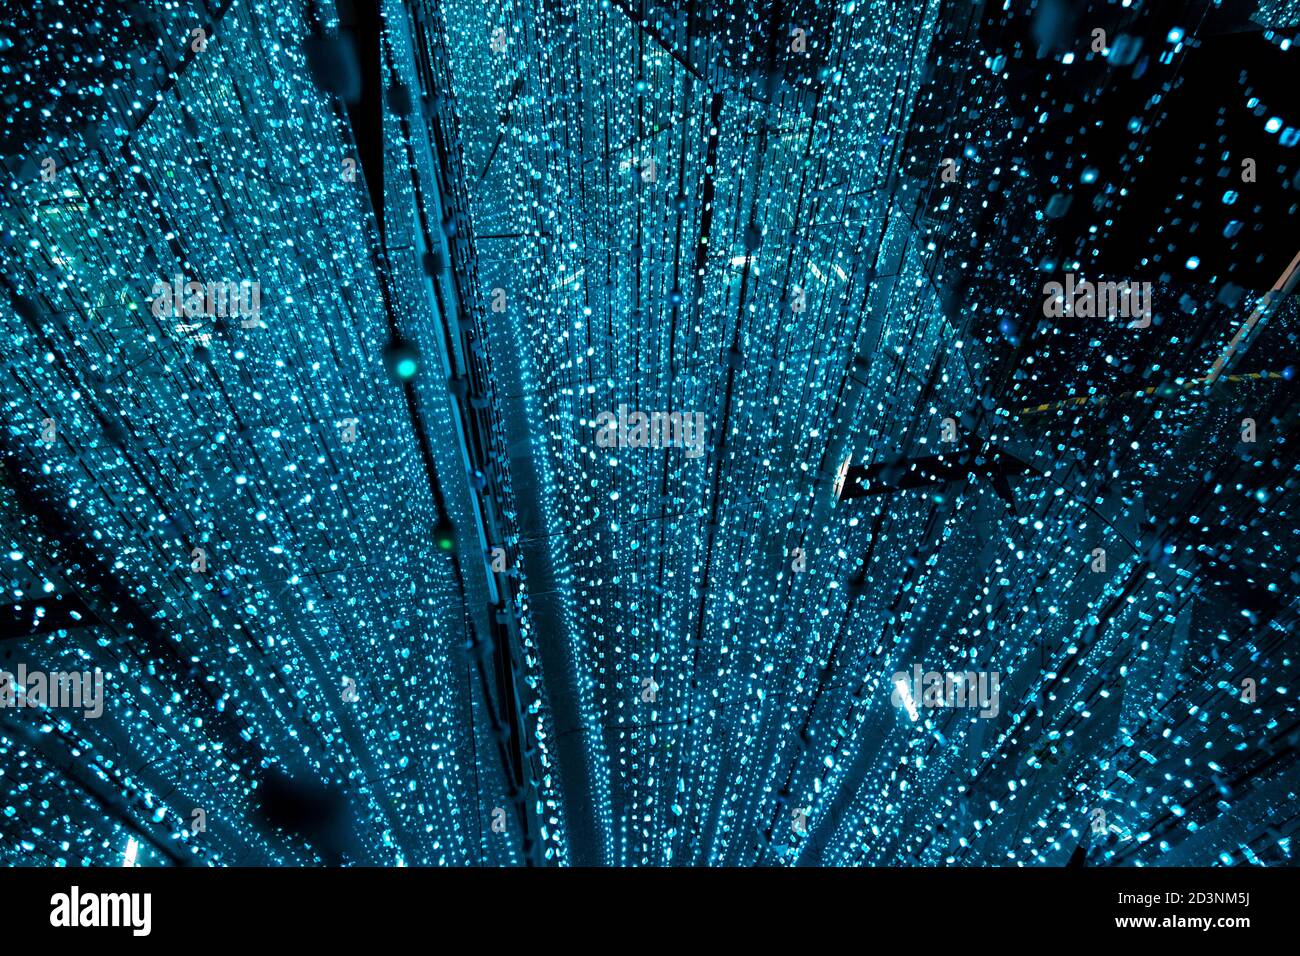 Lichtinstallation im Cosmos Muzeum - immersives Museum der Illusionen, Warschau, Polen Stockfoto